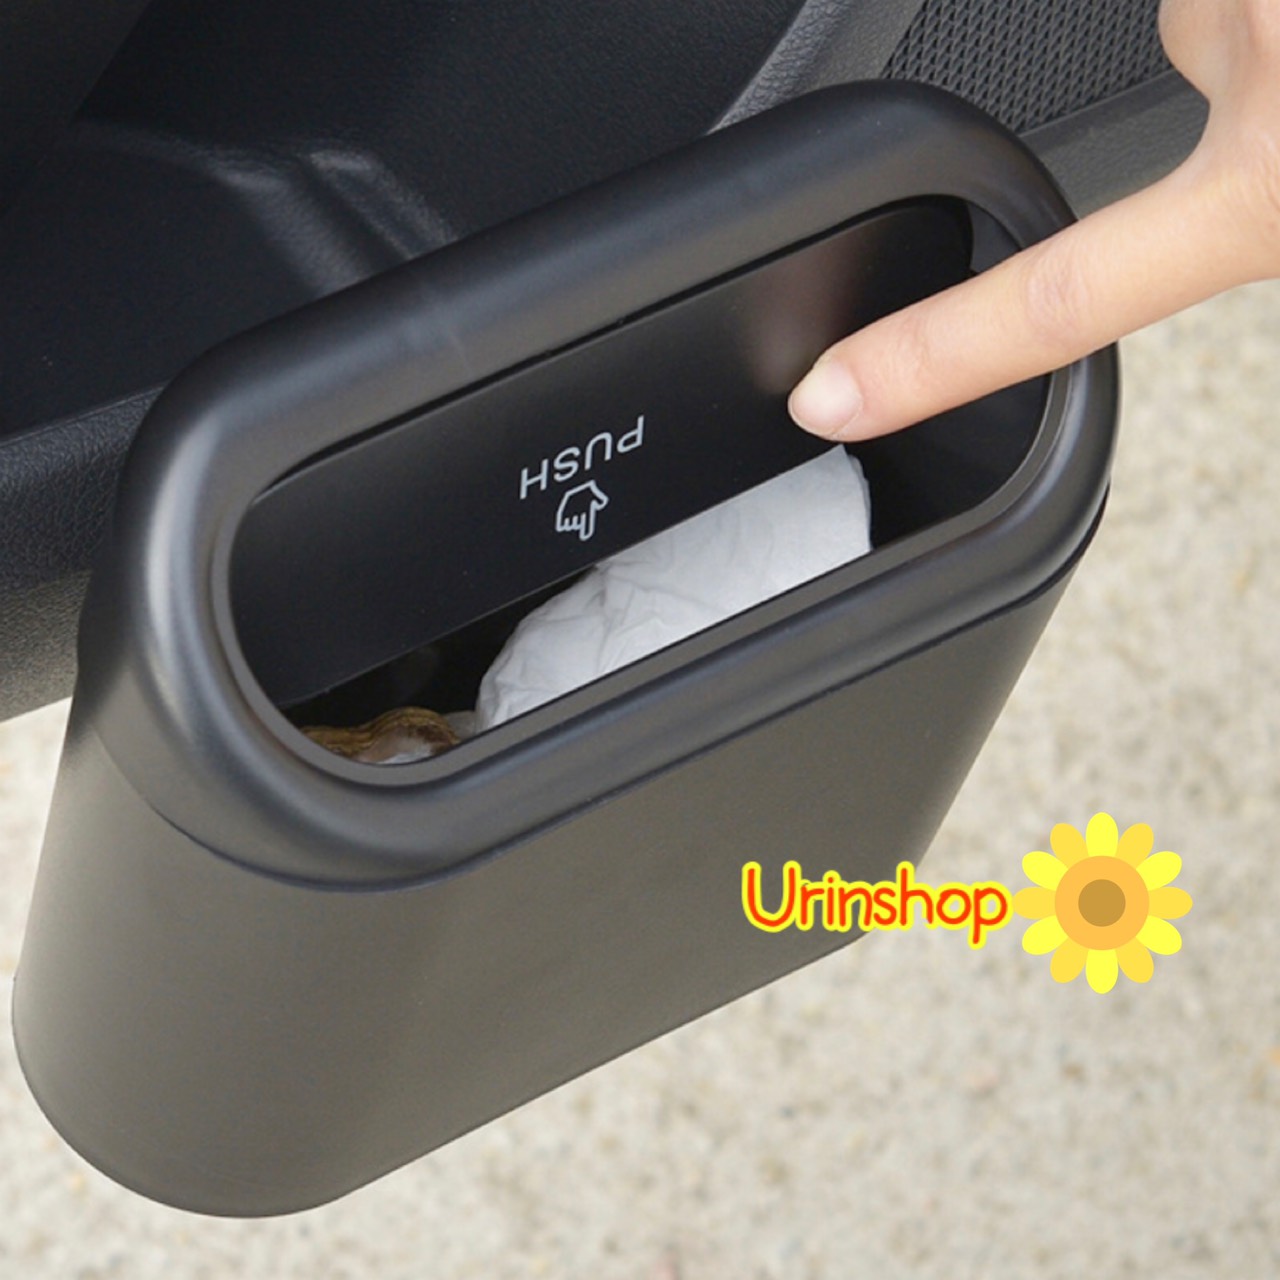 ถังขยะในรถ ถังขยะติดรถ ถังขยะแขวนรถ ถังขยะใบเล็ก ถังขยะรถ ถุงขยะในรถ ถังขยะในรถฝาปิดอัตโนมัติ ถังขยะใบเล็ก ถังขยะแบบกด Urinshop